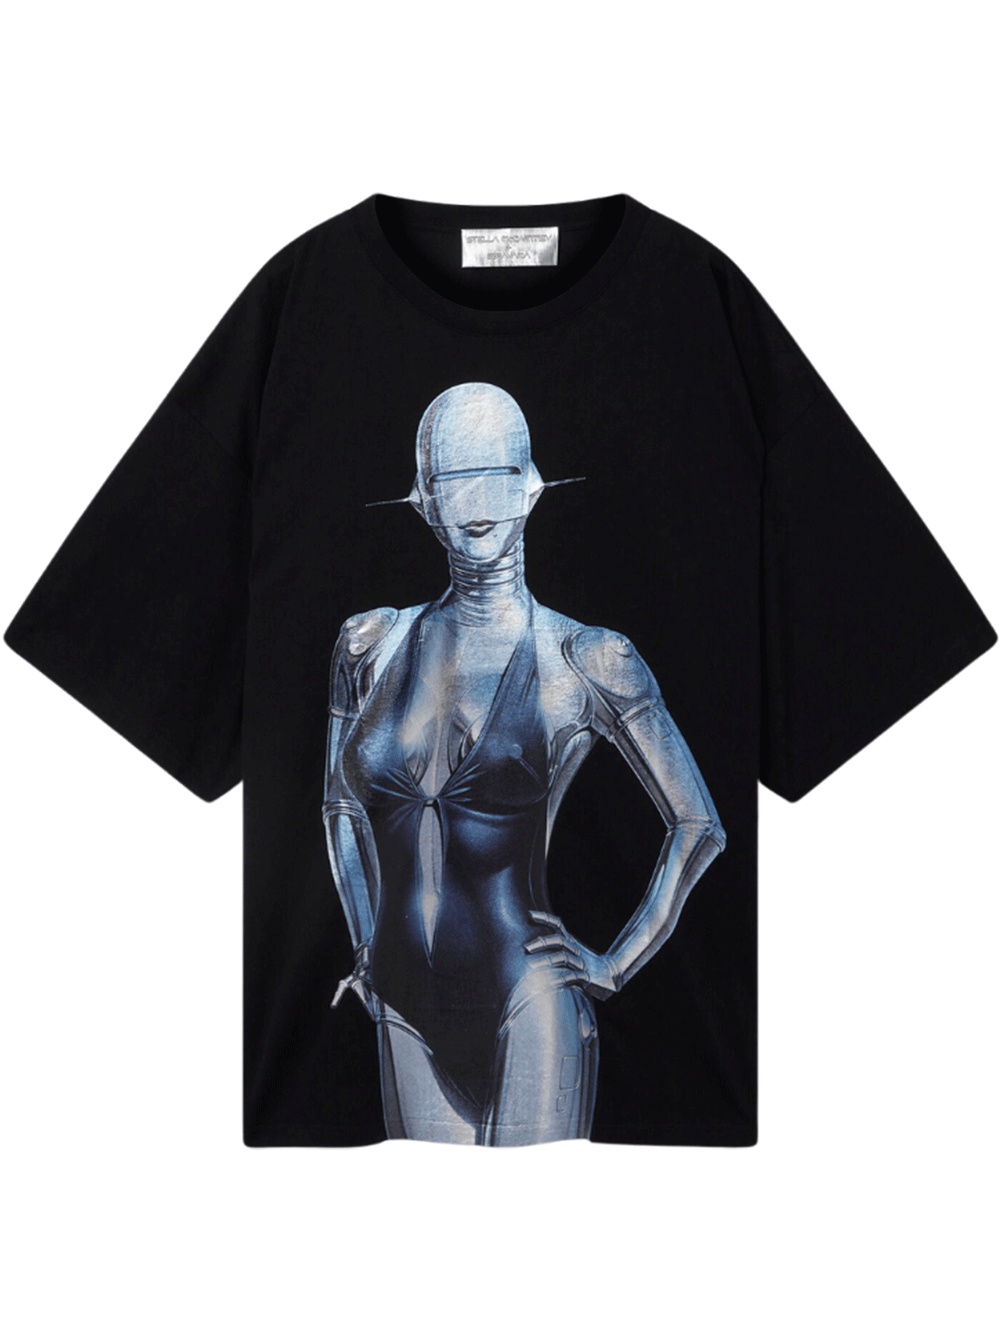 Stella McCartney + Sorayama Sexy Robot Oversized Organic Cotton T-Shirt - 1